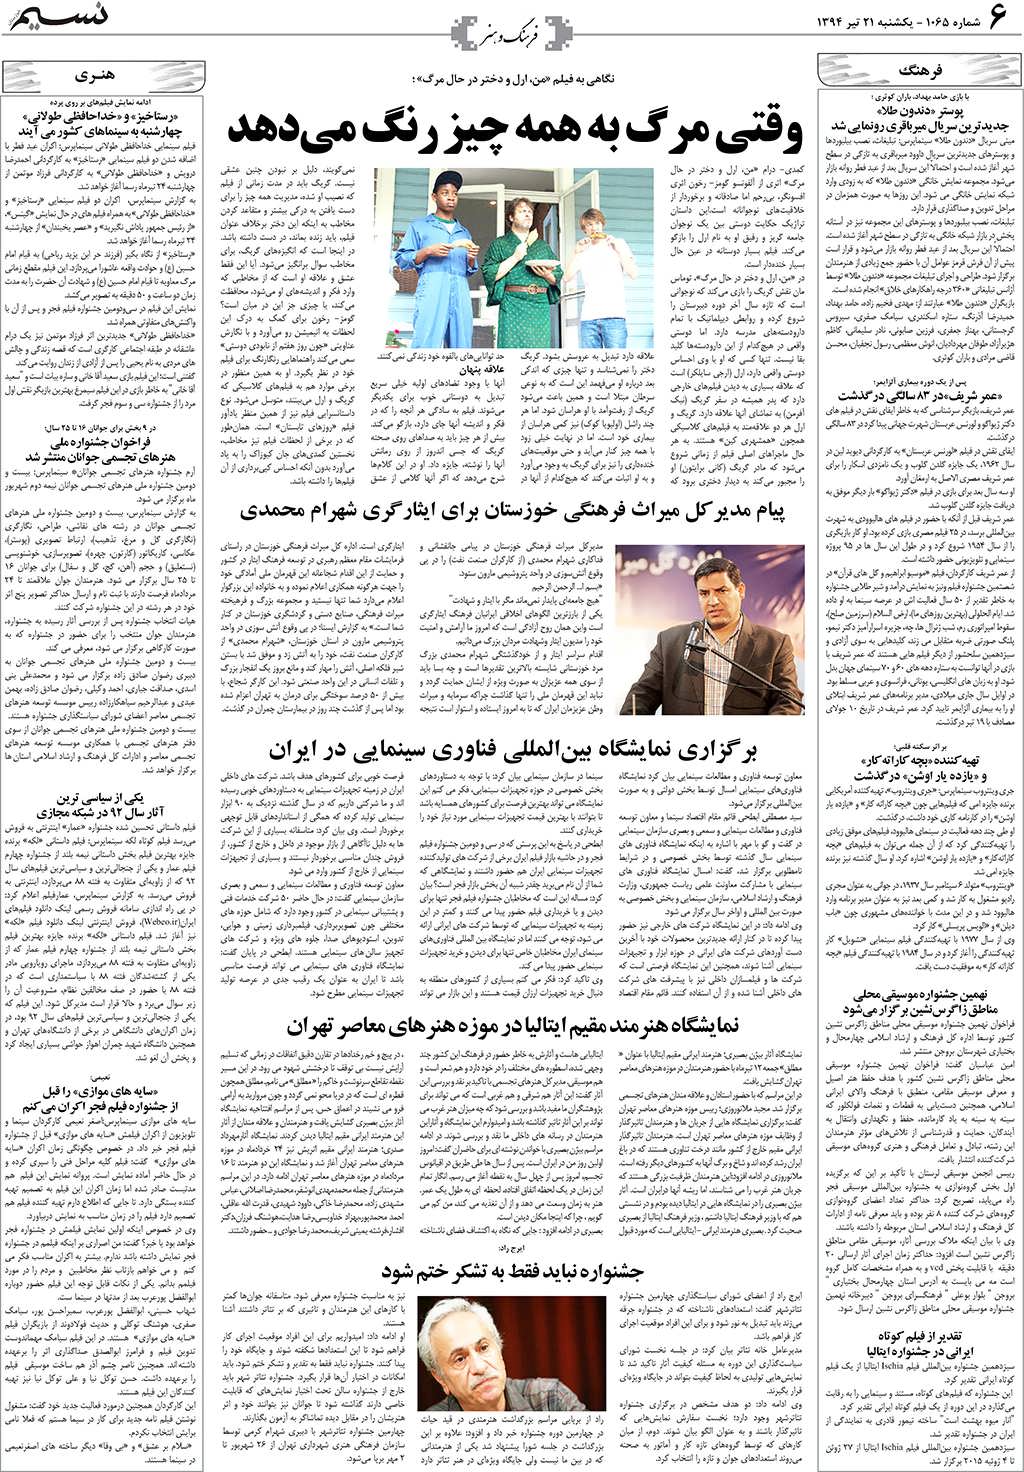 صفحه فرهنگ و هنر روزنامه نسیم شماره 1065